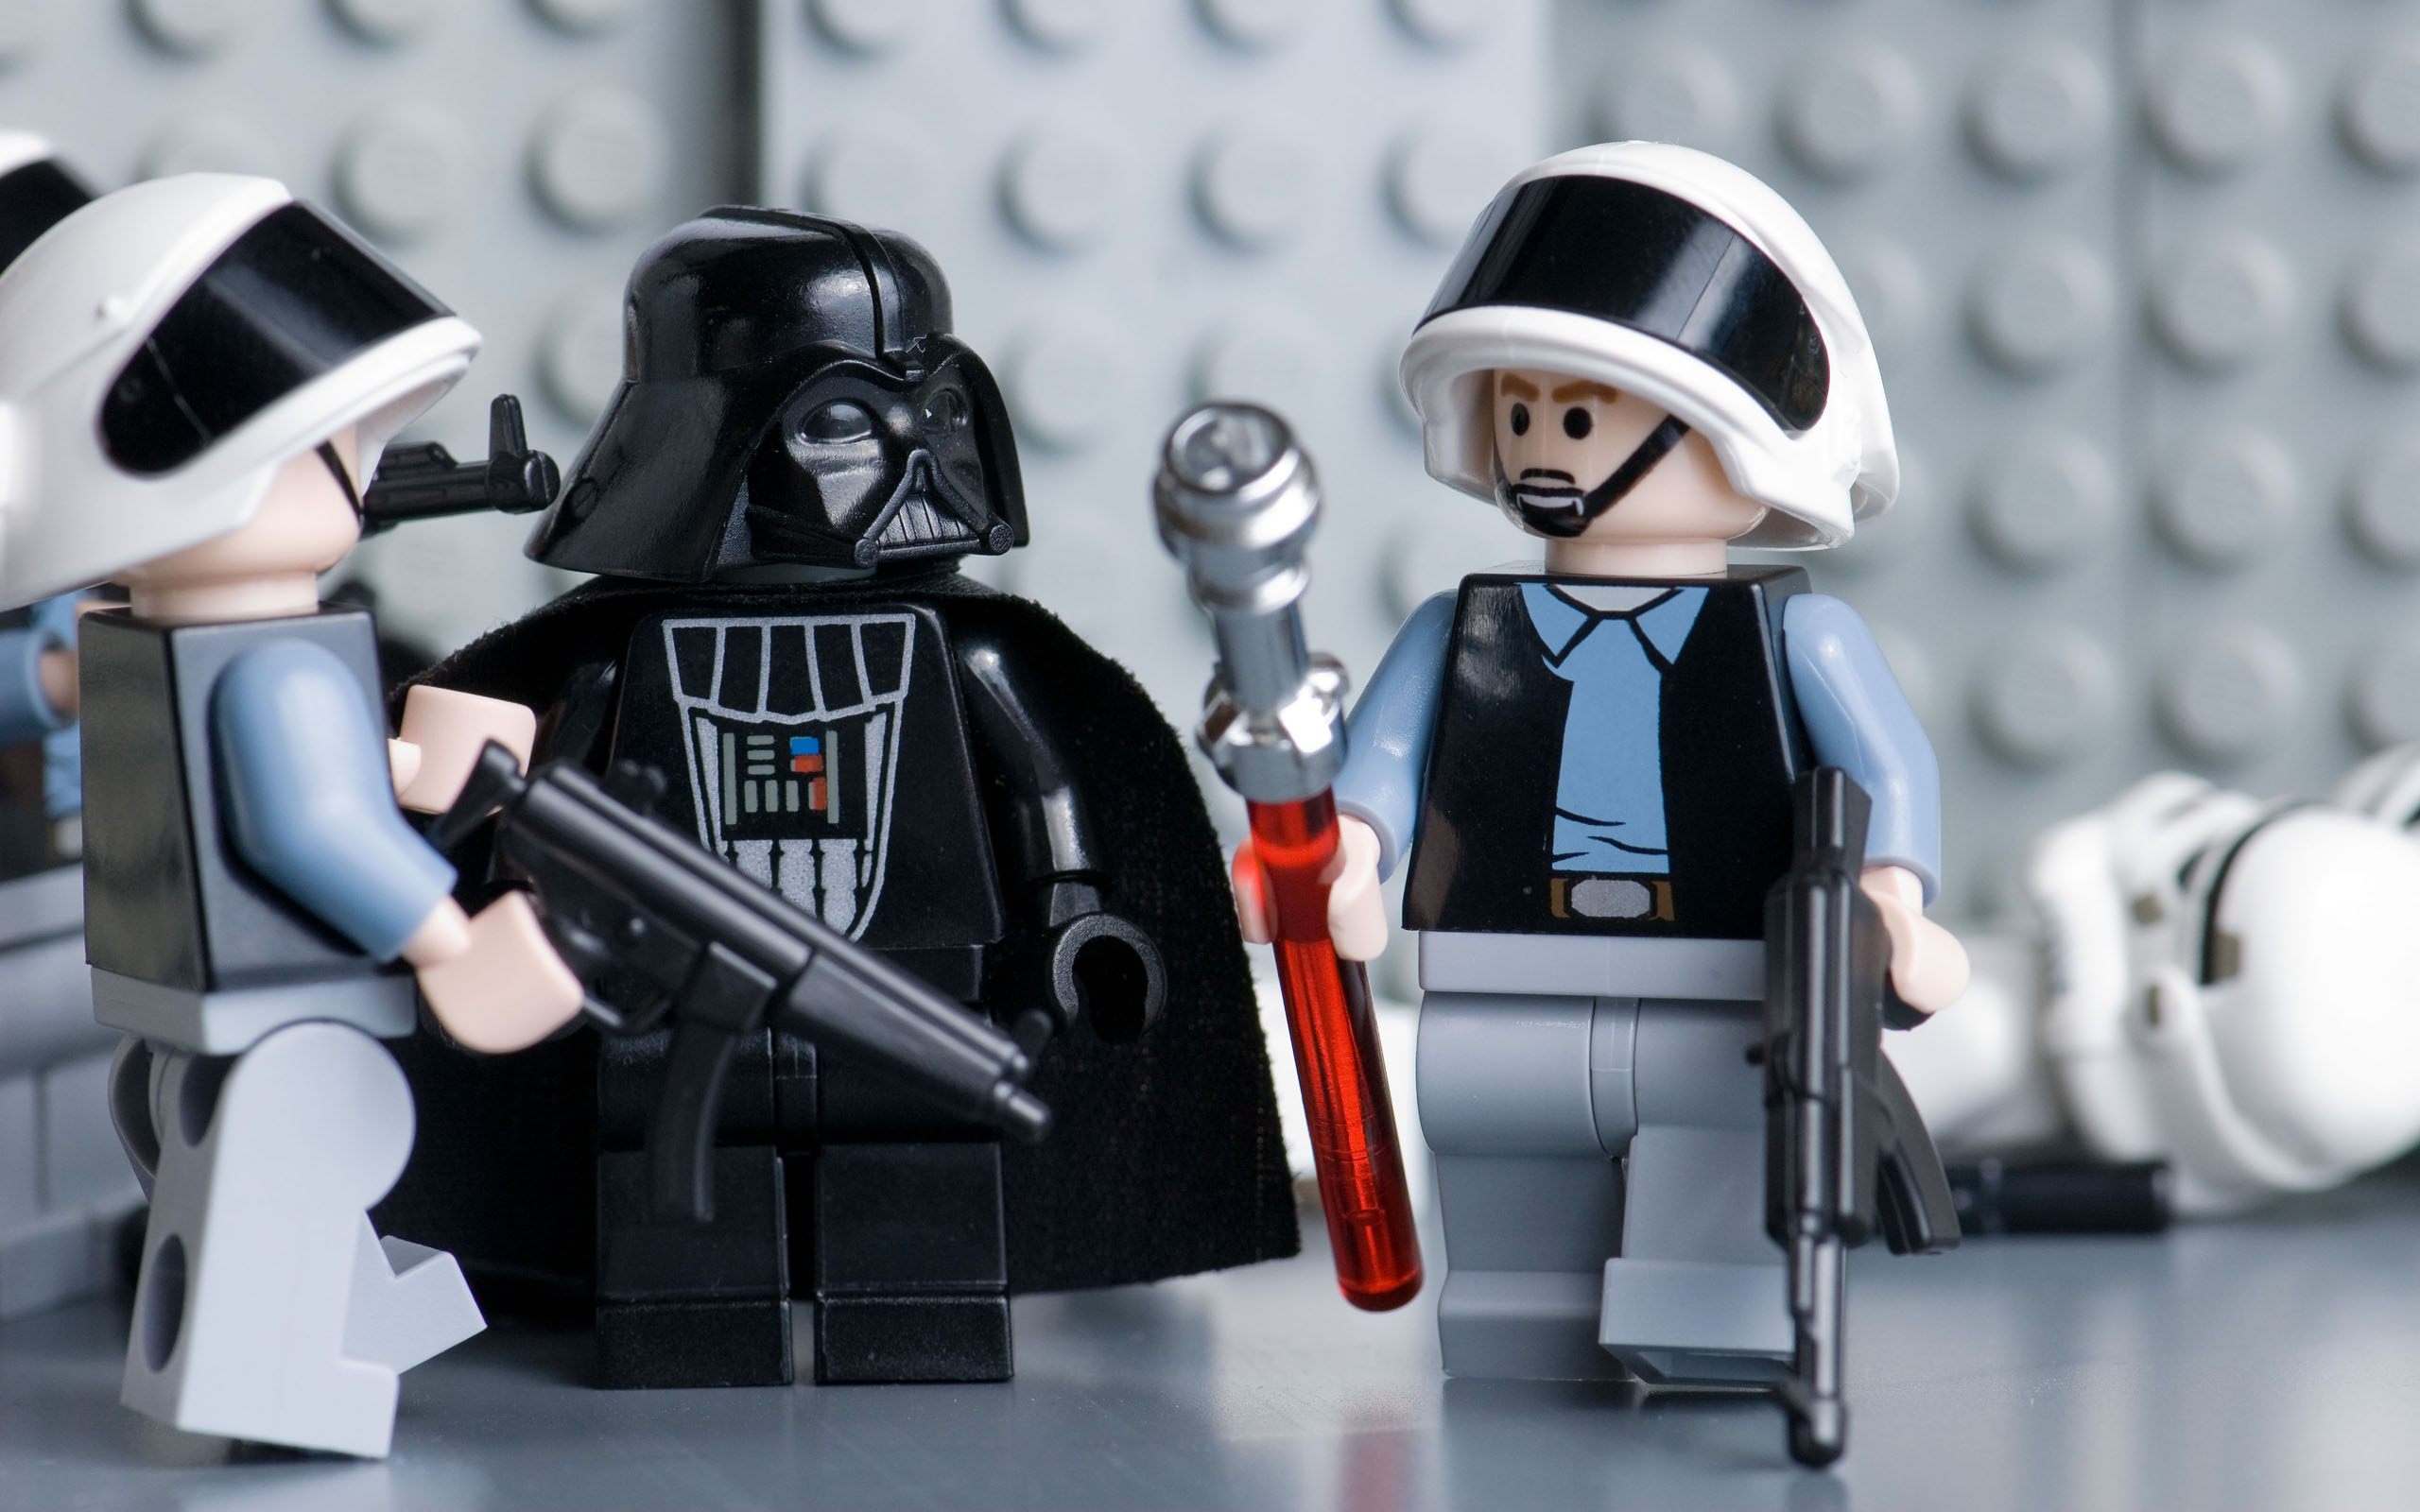 Sci-Fi Lego Star Wars desktop wallpaper.